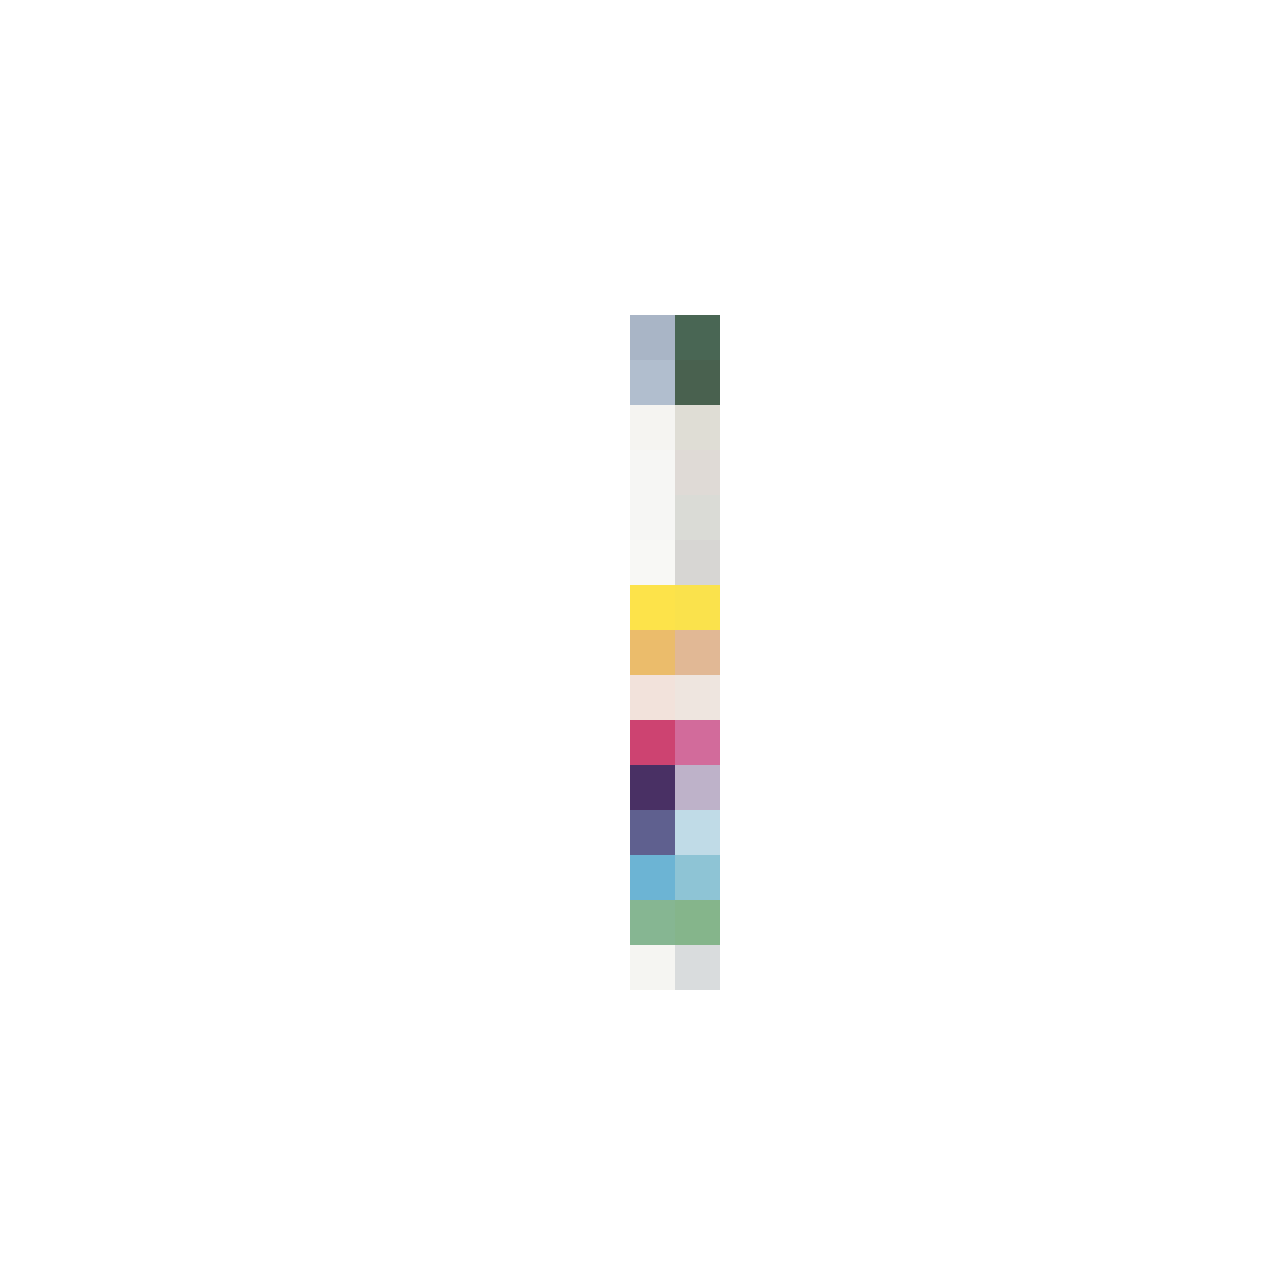 Multicolor: penna a sfera BIC, 4 colori, fr. 6.95, su microspot.ch.